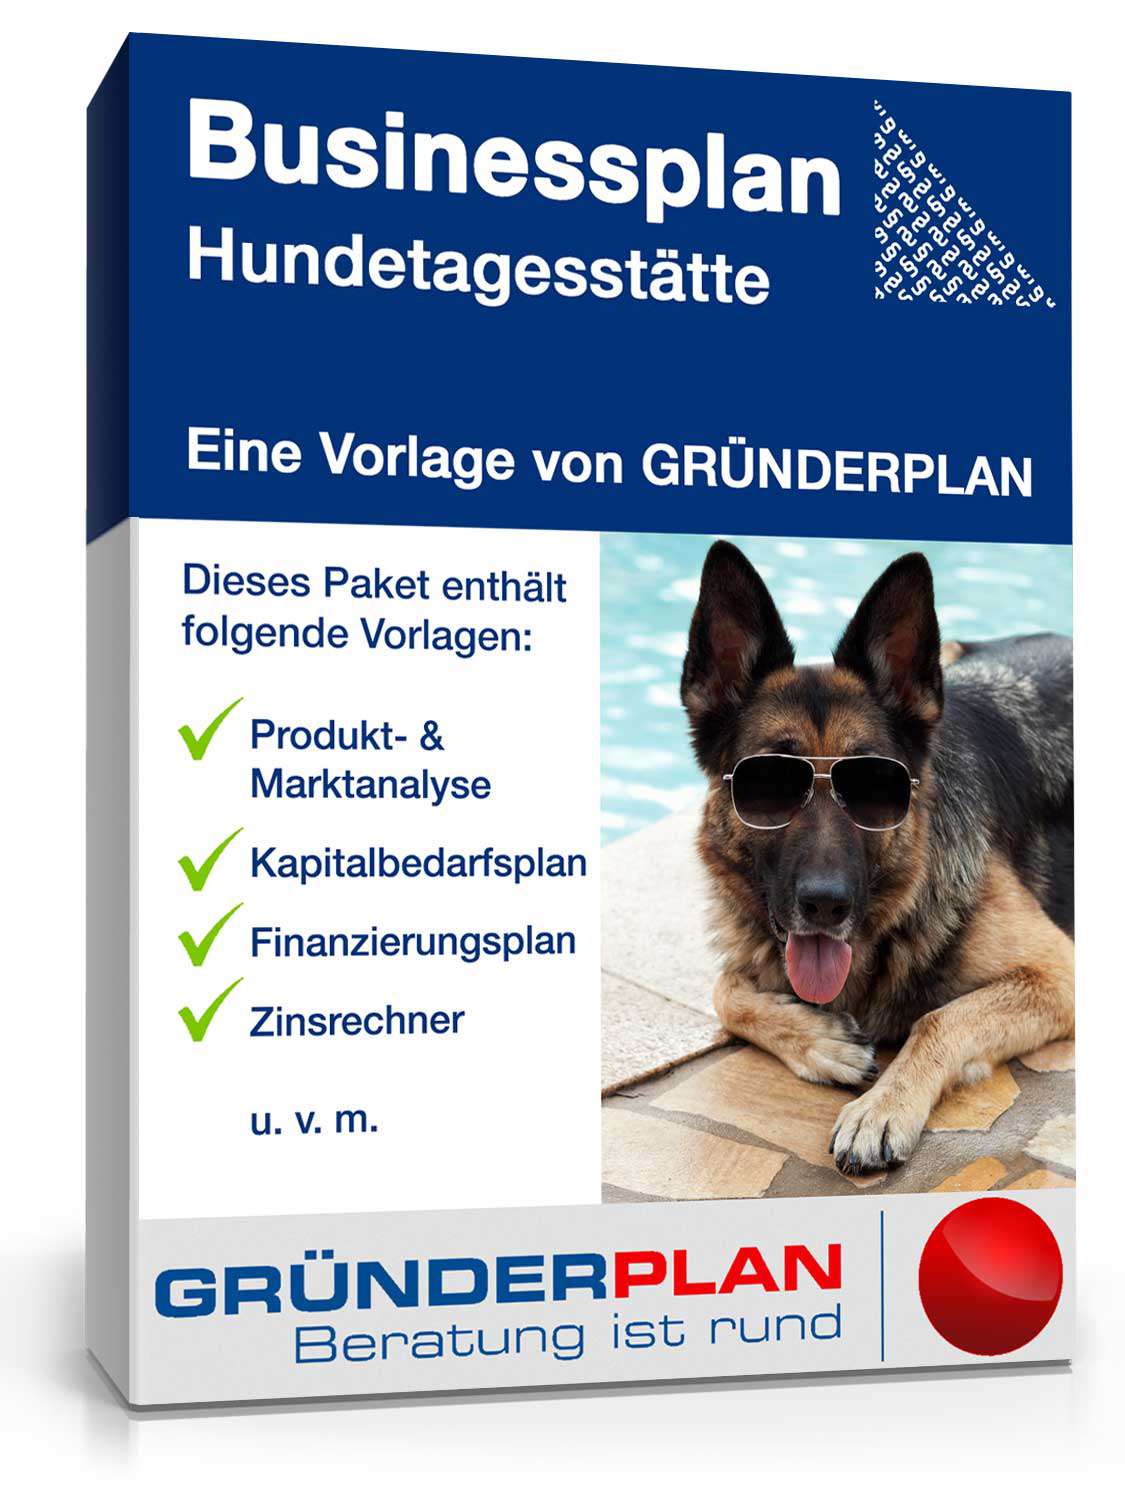 Hauptbild des Produkts: Businessplan Hundetagesstätte von Gründerplan